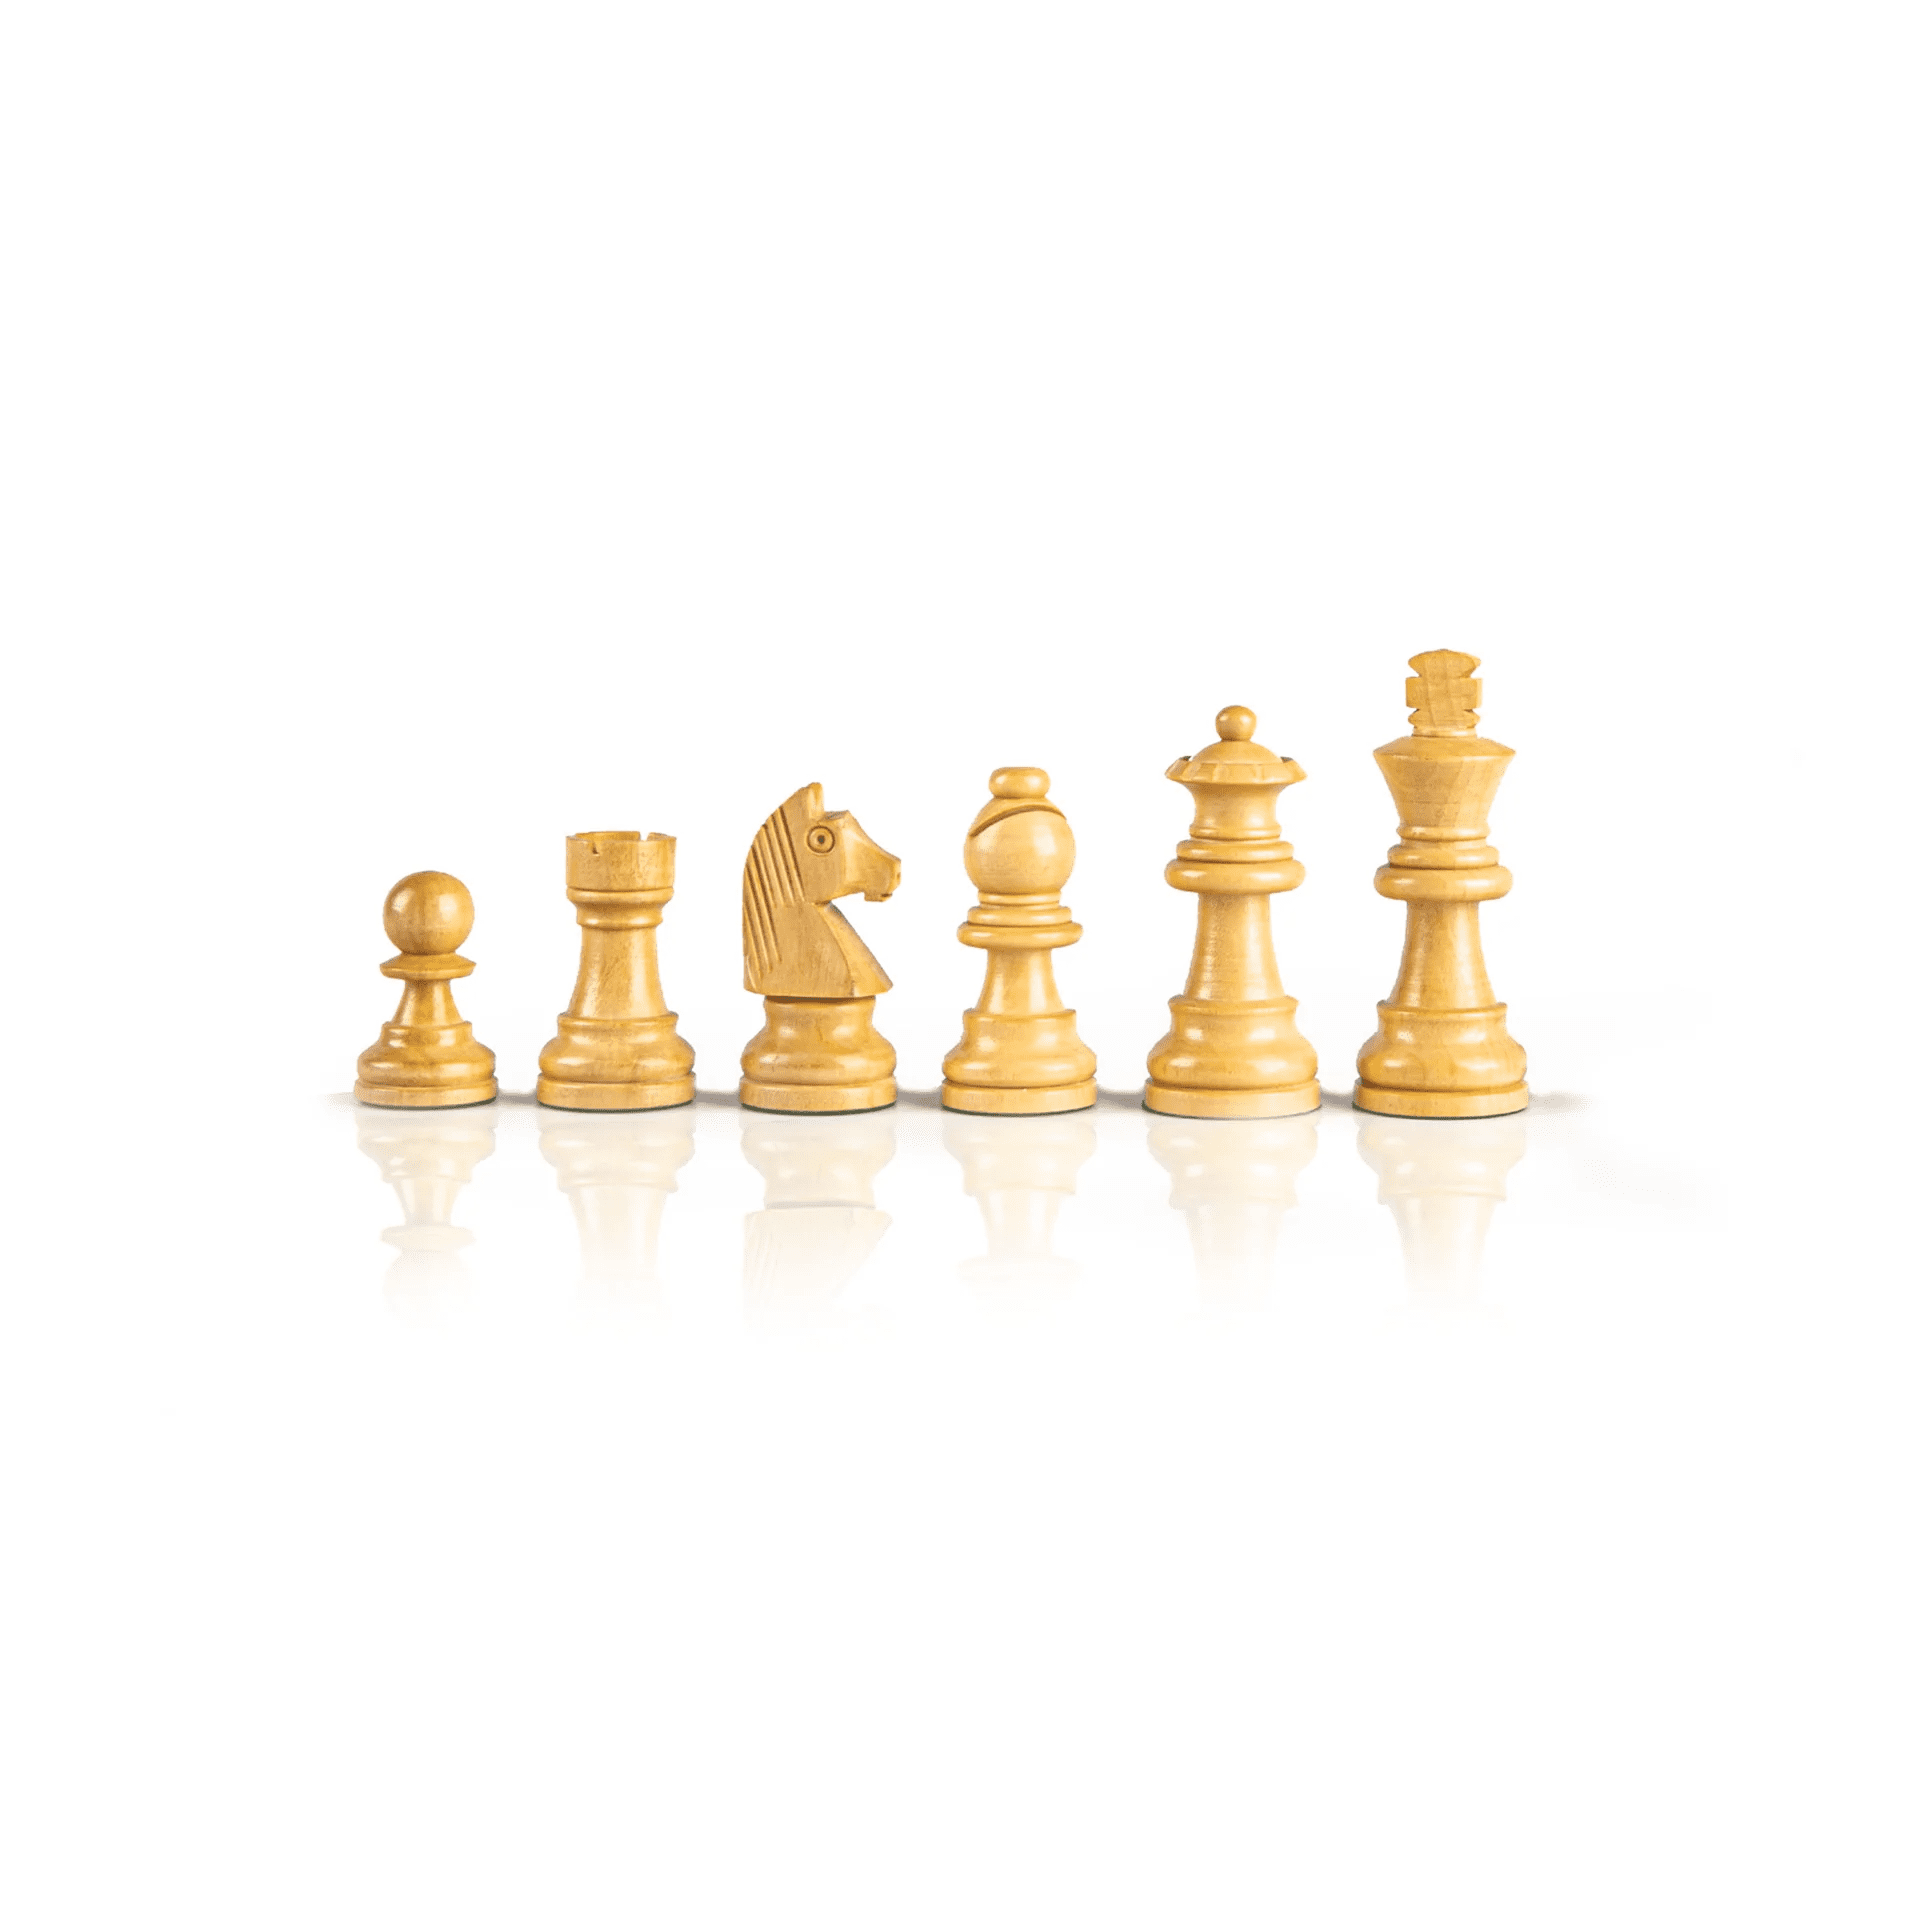 Staunton houten schaakstukken - Koningshoogte 9.5 cm